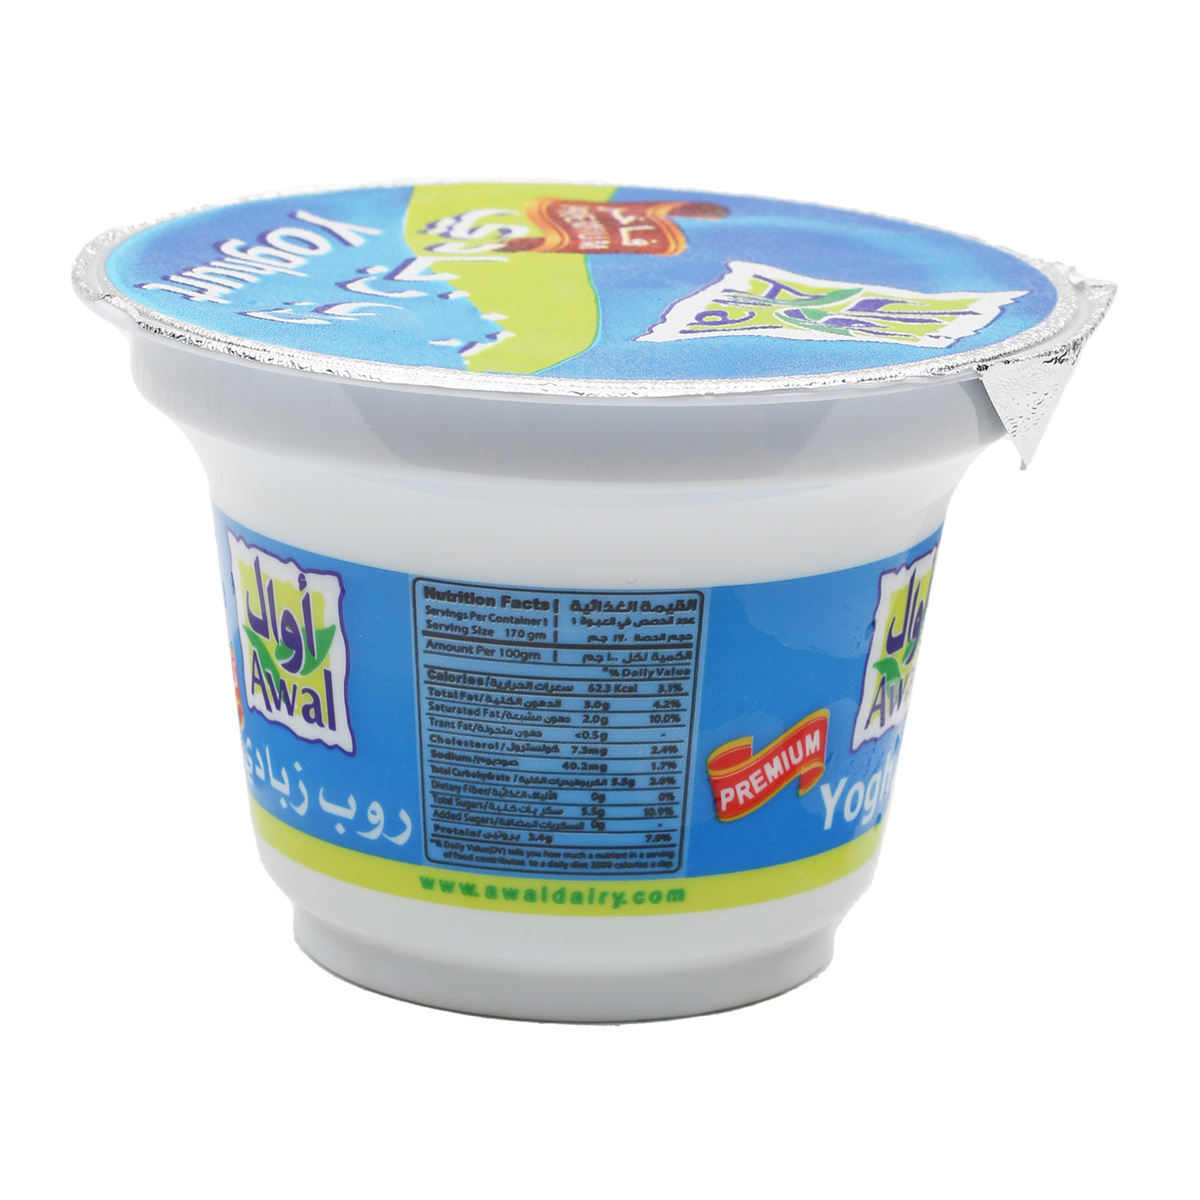 Awal Full Cream Yoghurt 6 x 160 g